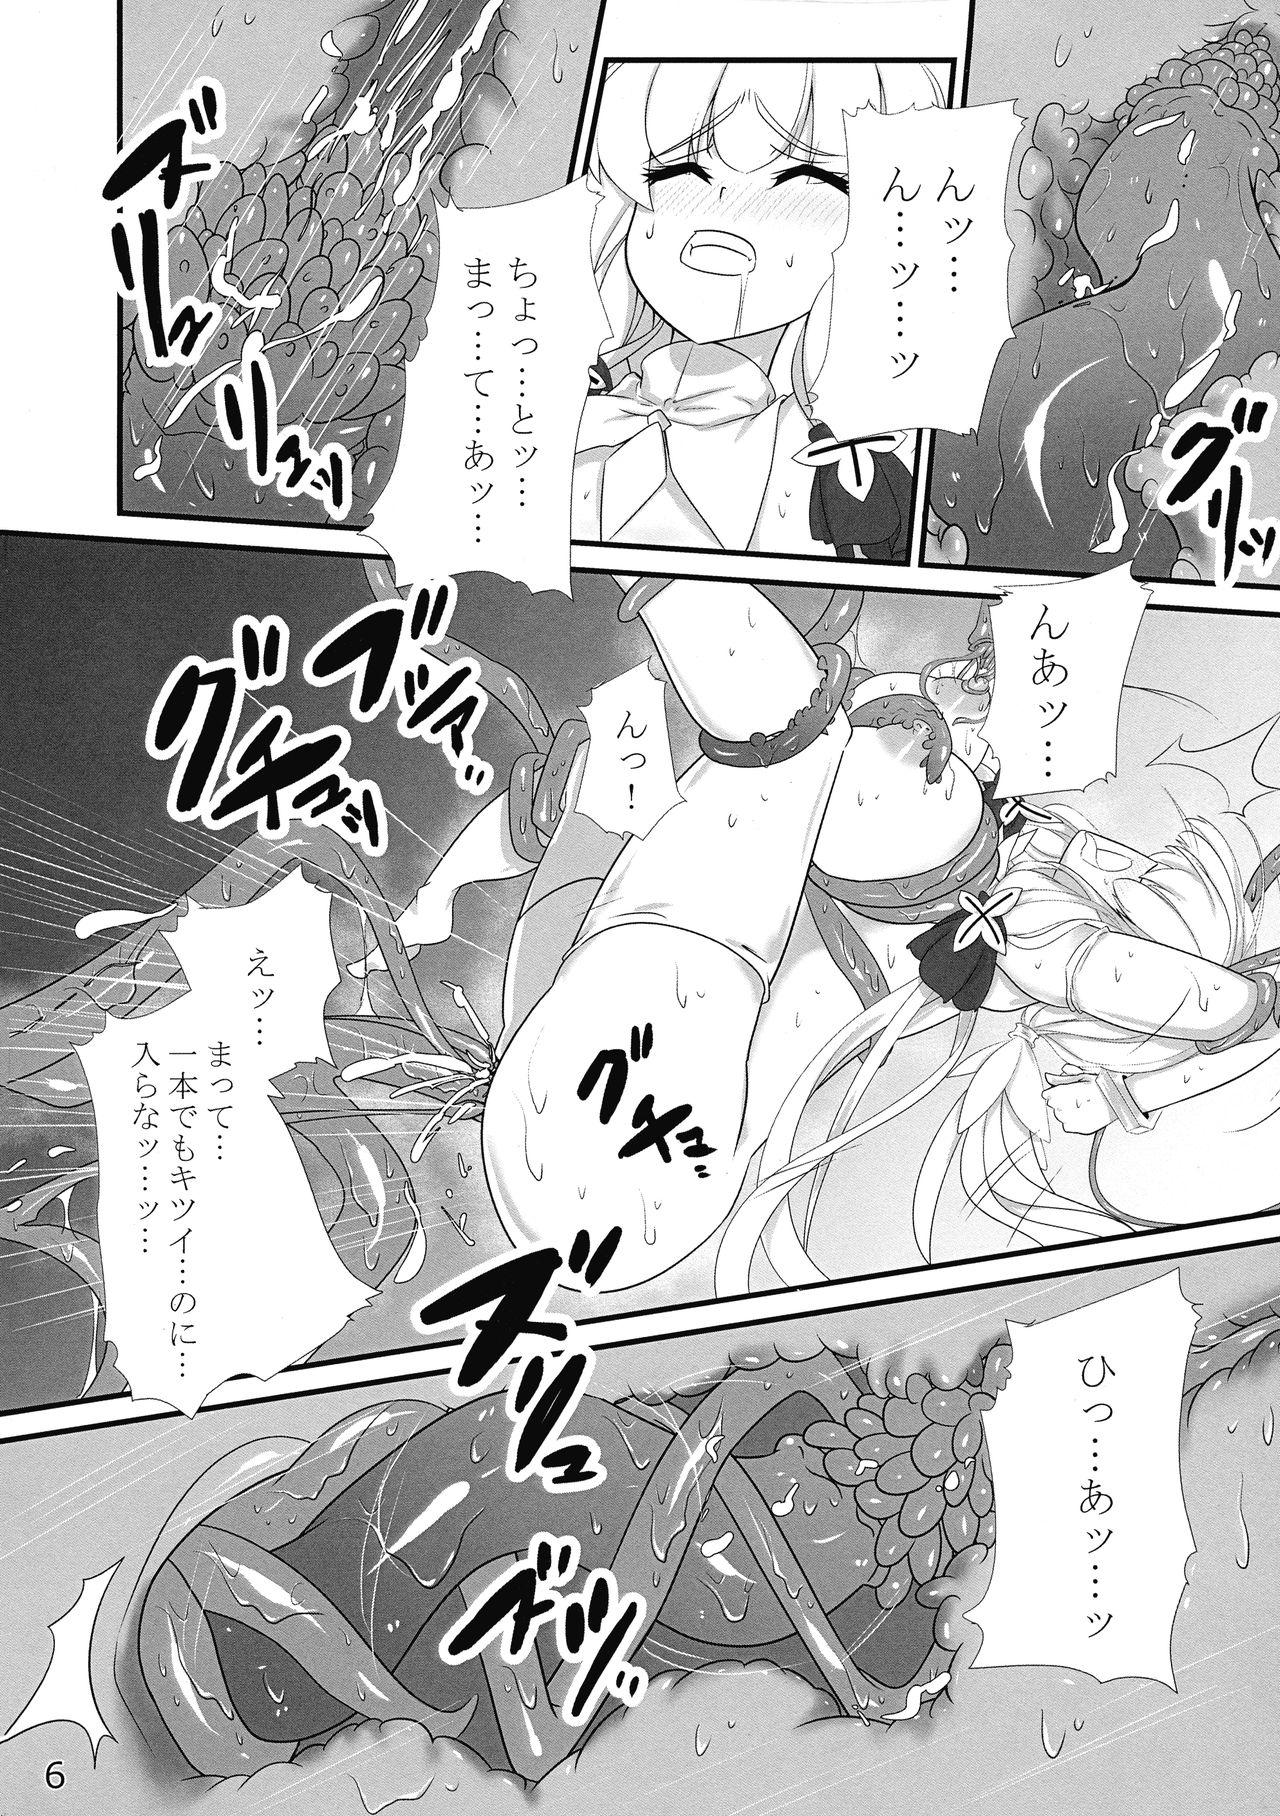 Screaming Taieki-kan Shuuyousho 2 - Azur lane Stepmom - Page 7